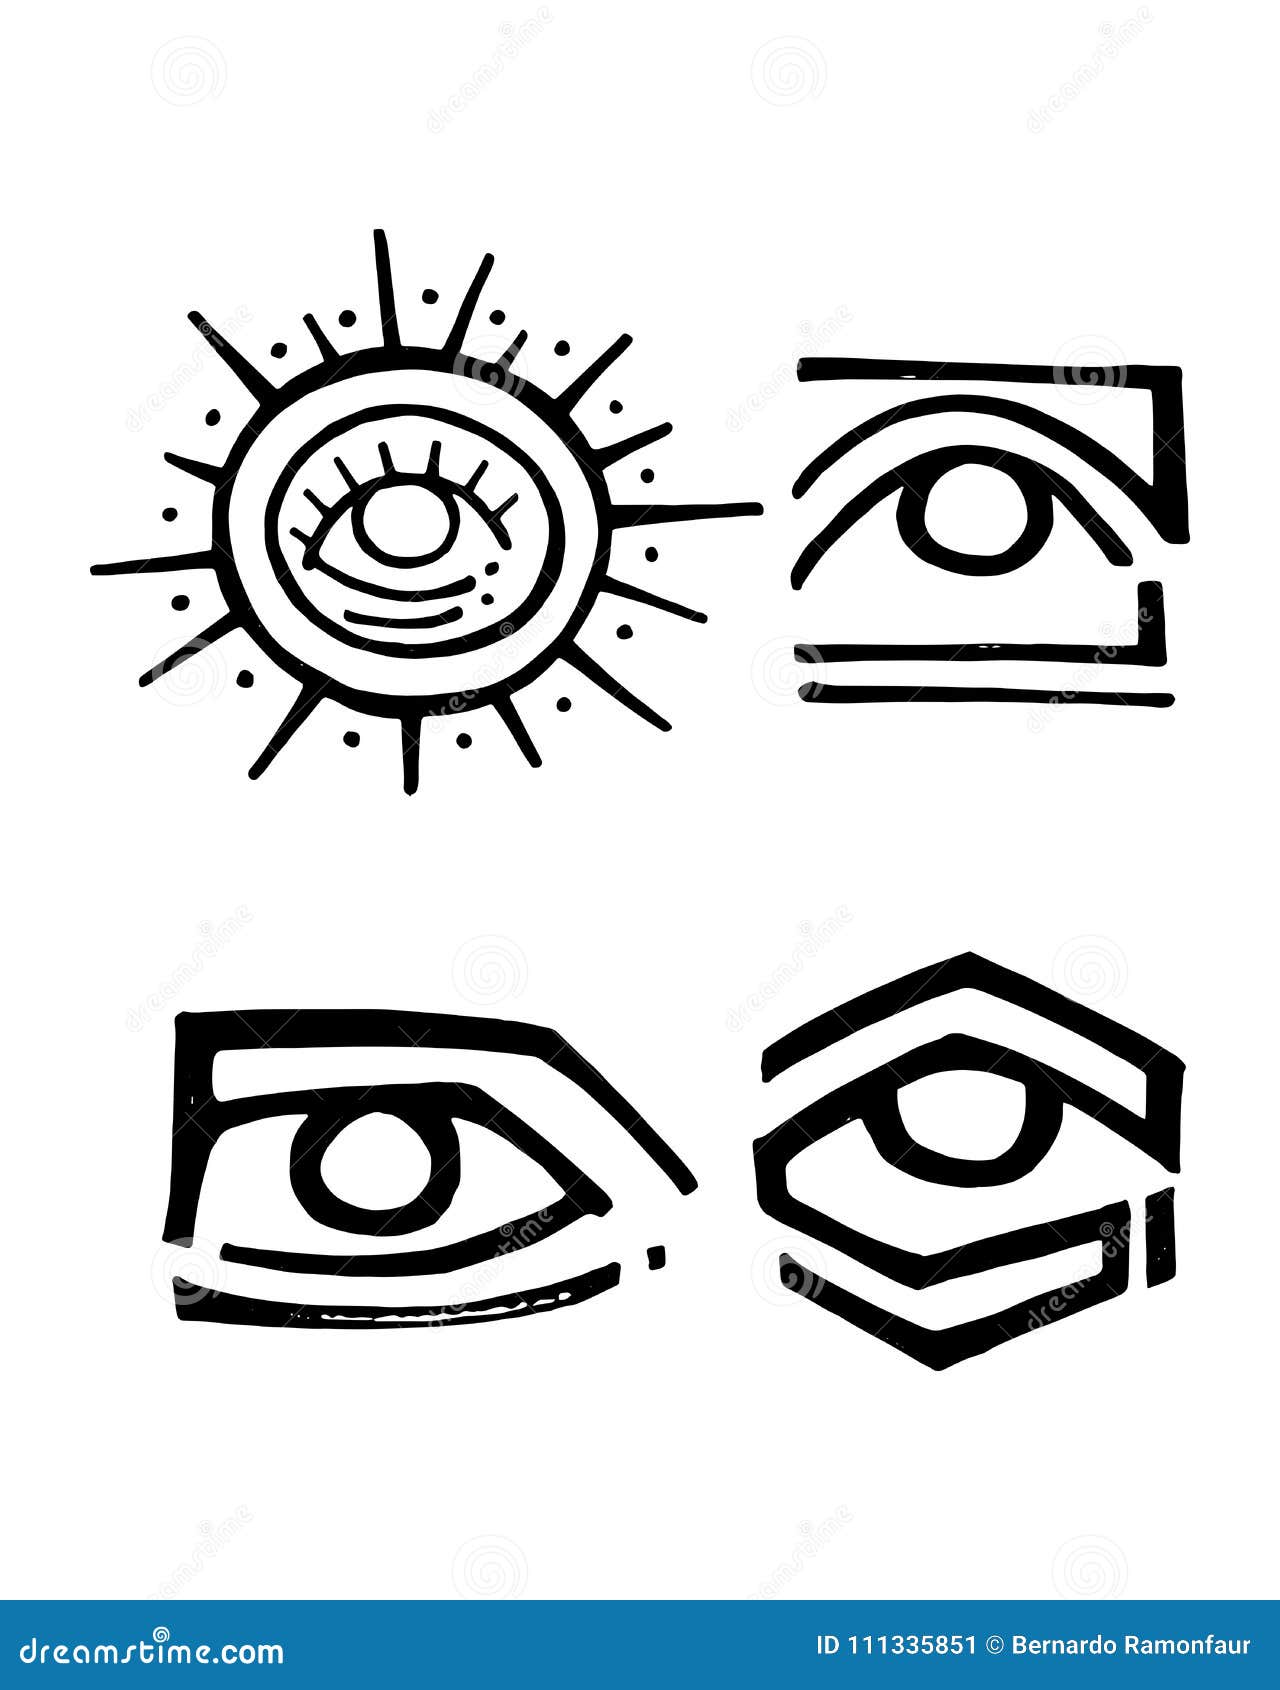 ilustra%C3%A7%C3%A3o-ou-desenho-tribal-da-tinta-do-vetor-dos-olhos-111335851.jpg